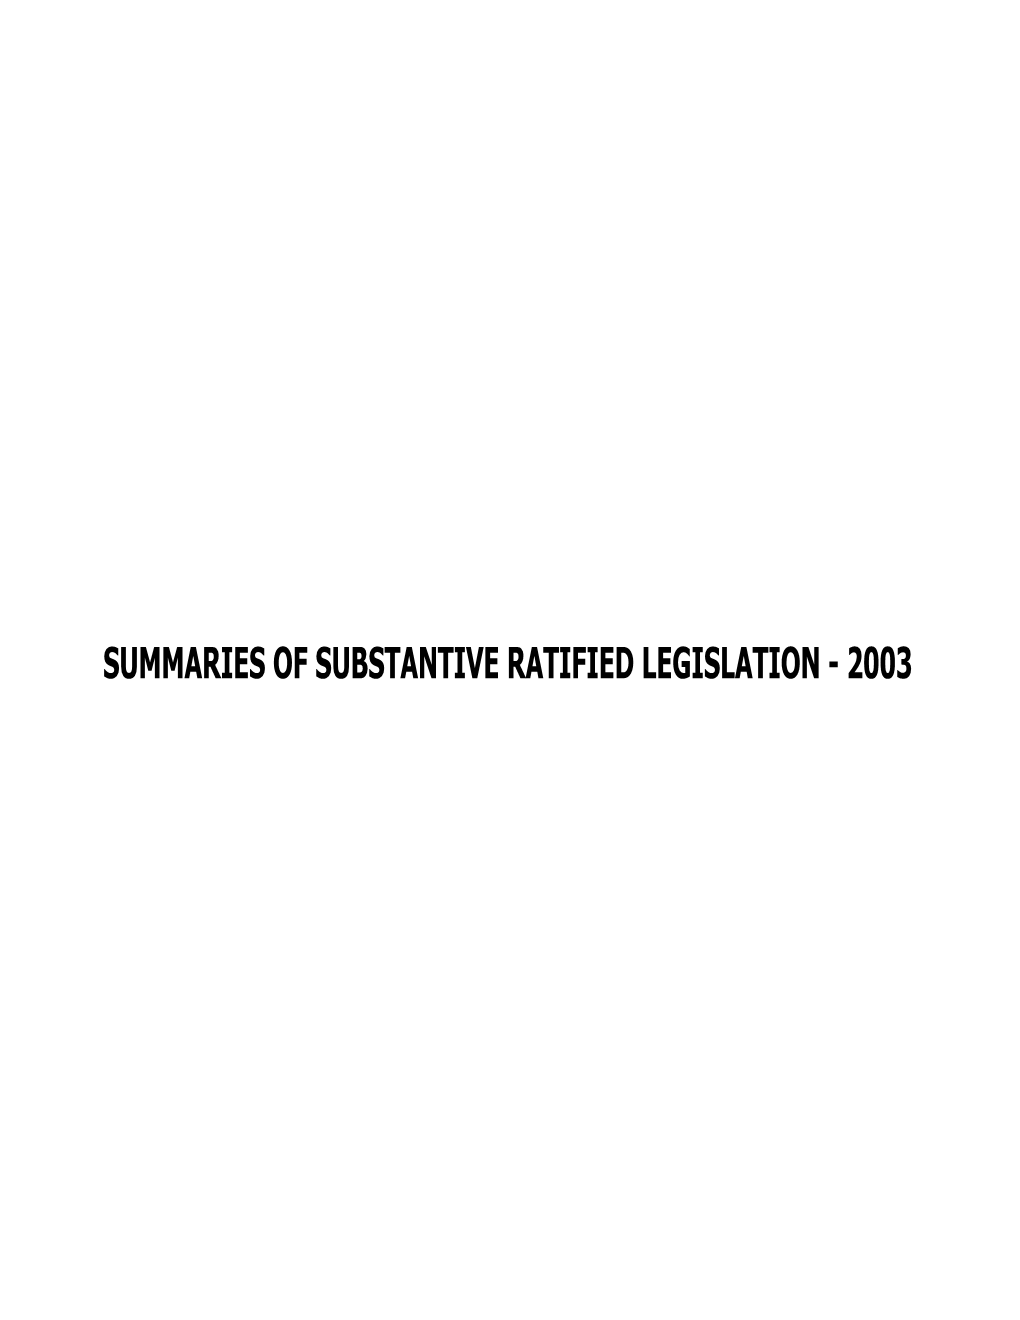 Summaries of Substantive Ratified Legislation - 2003